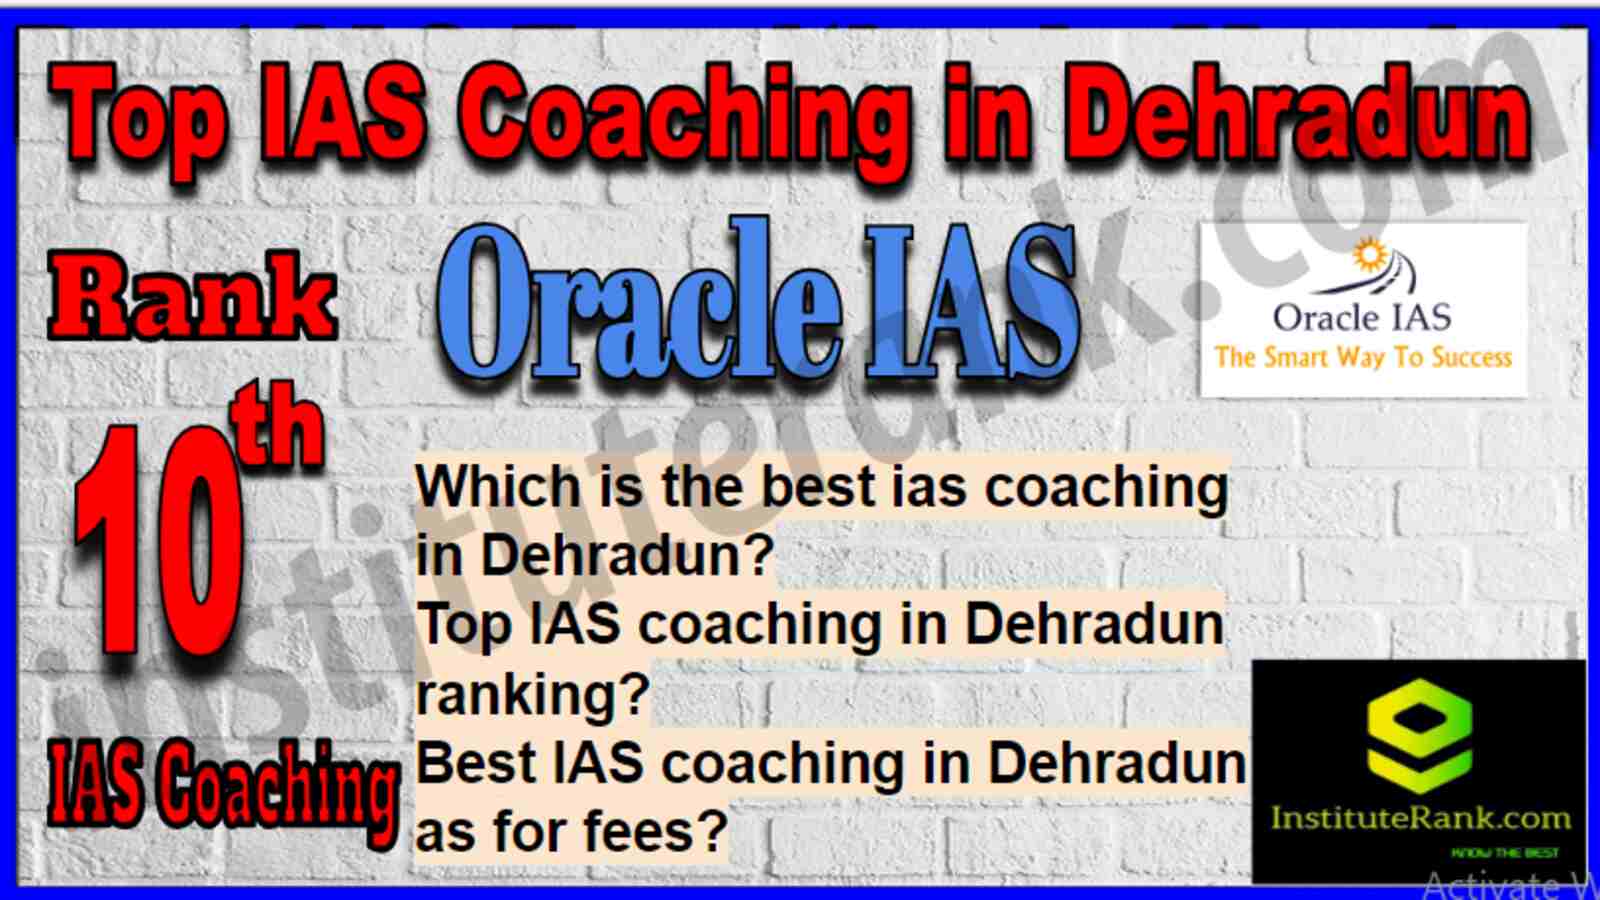 Rank 10 Top IAS Coaching in Dehradun